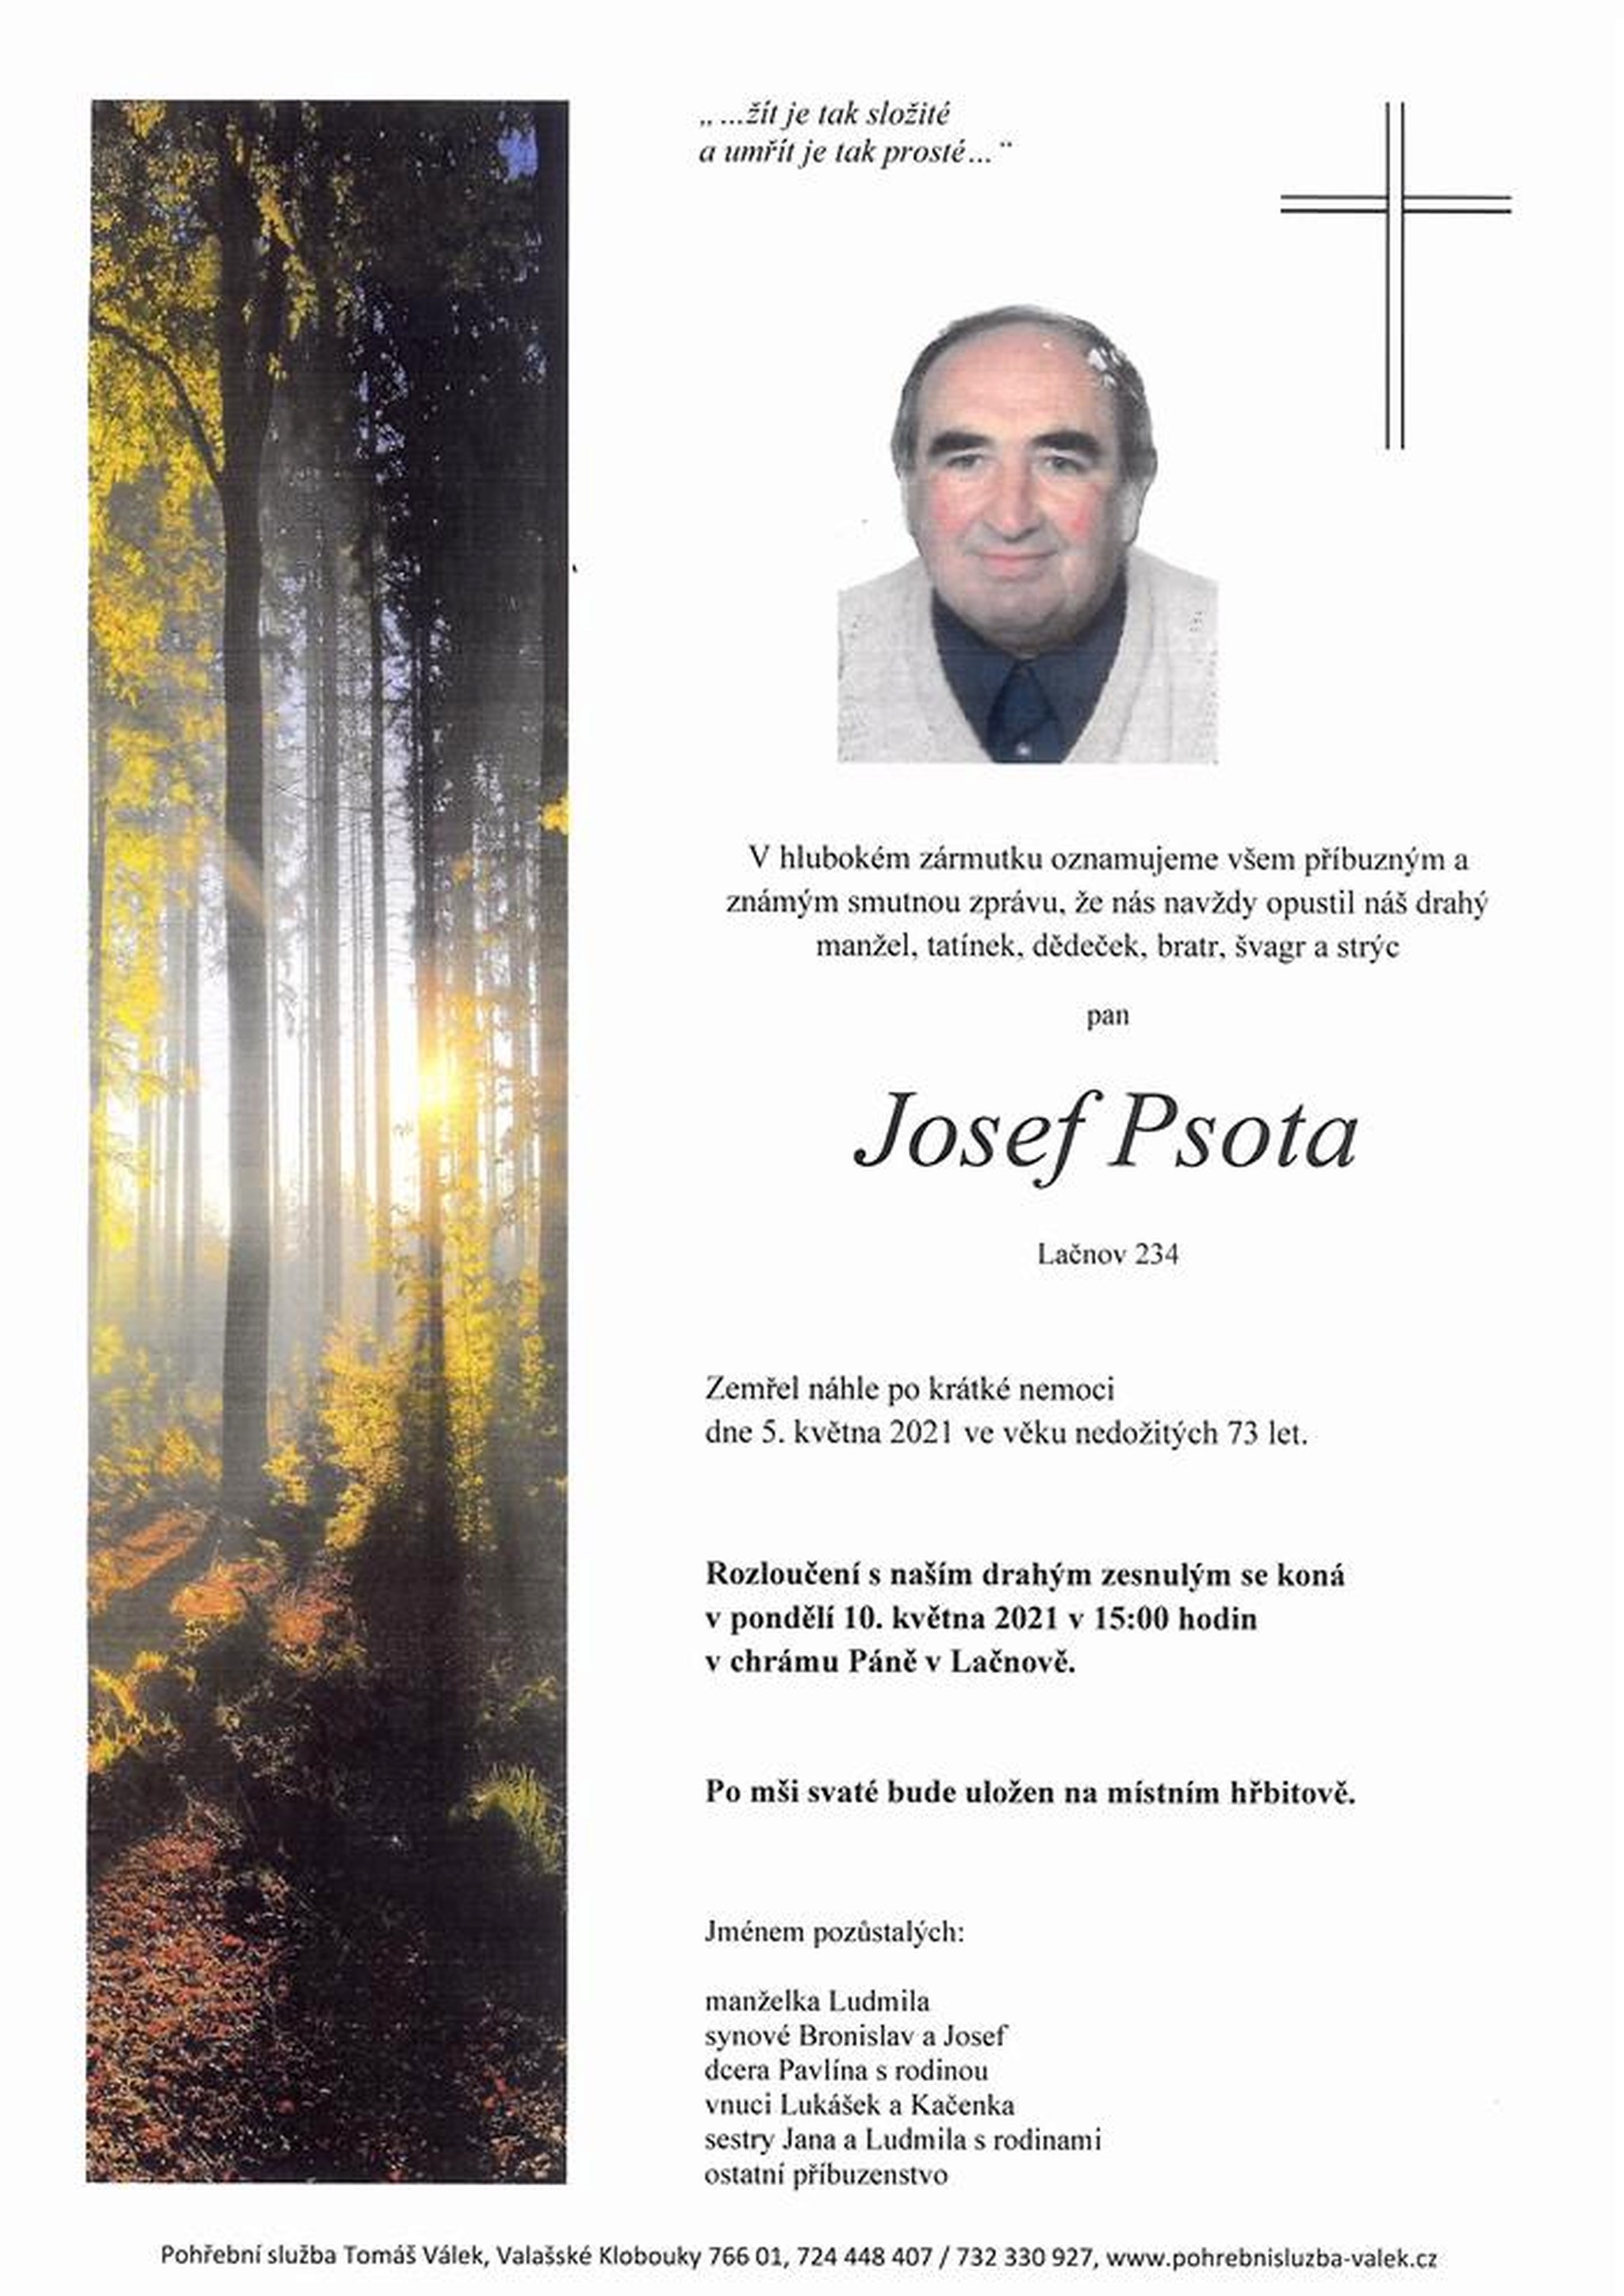 Josef Psota